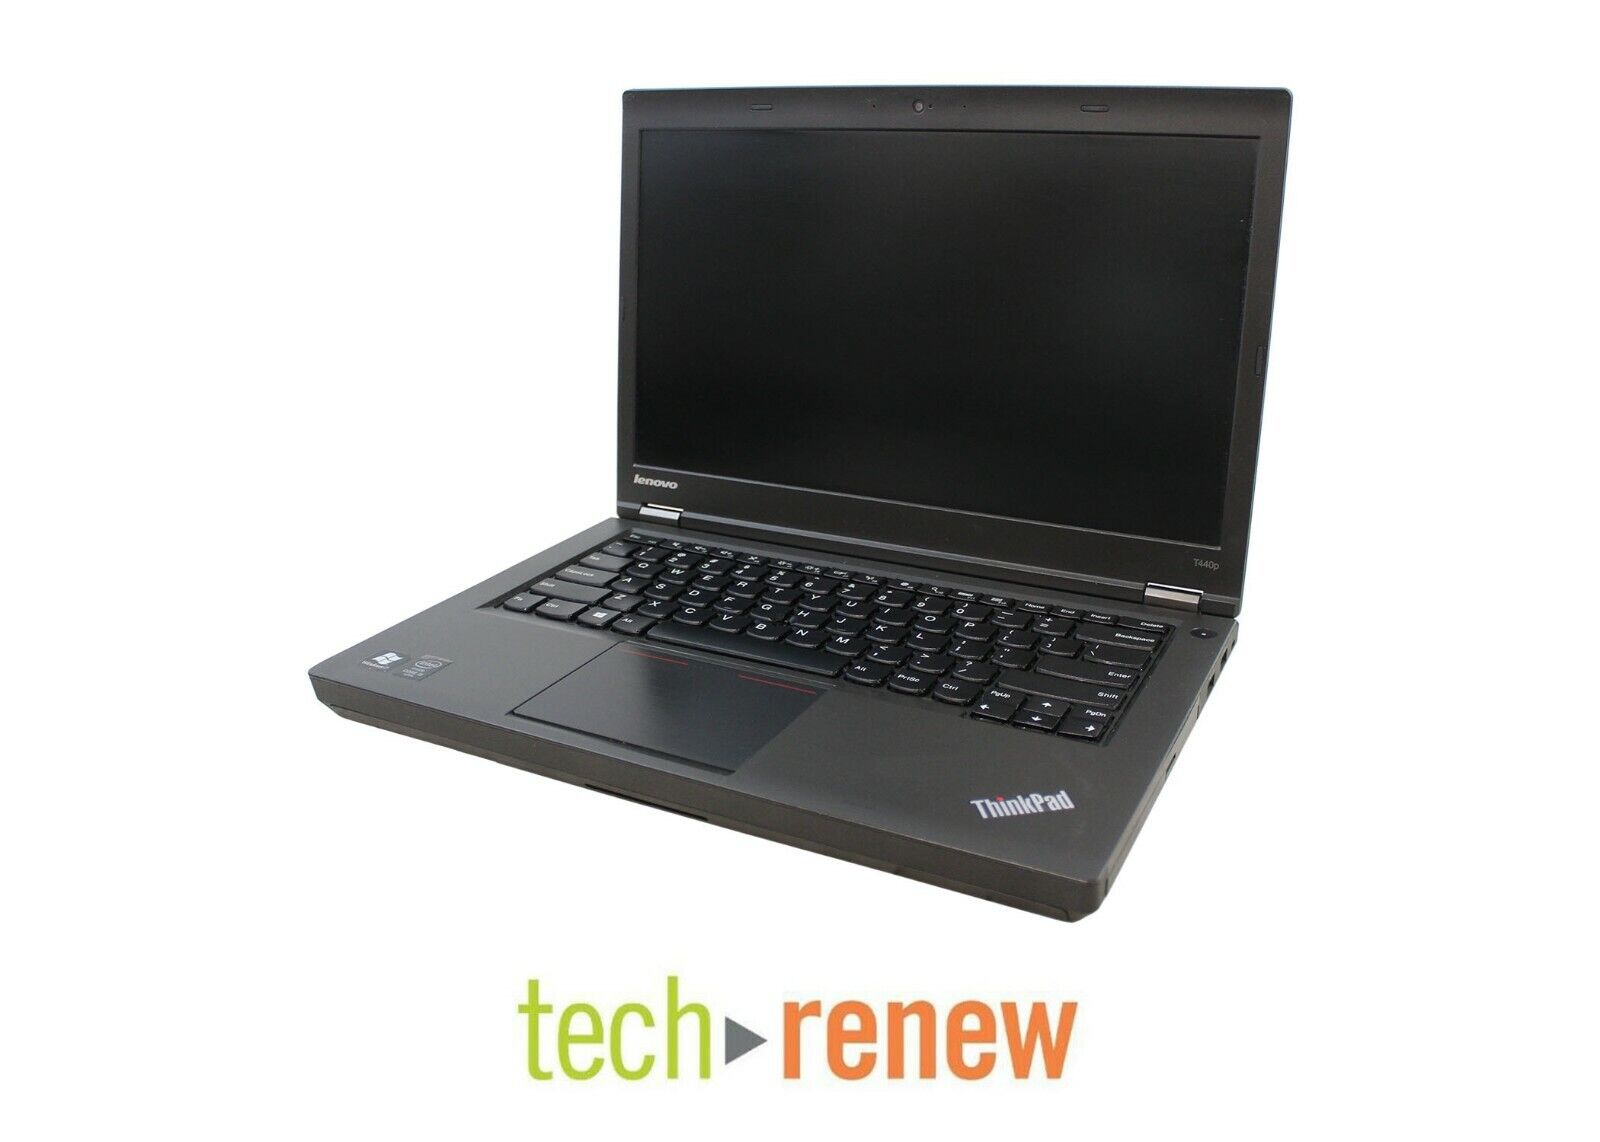 Lenovo ThinkPad T440p | Intel i5-4300M @ 2.6GHz | 4GB RAM | 180GB HDD | Webcam